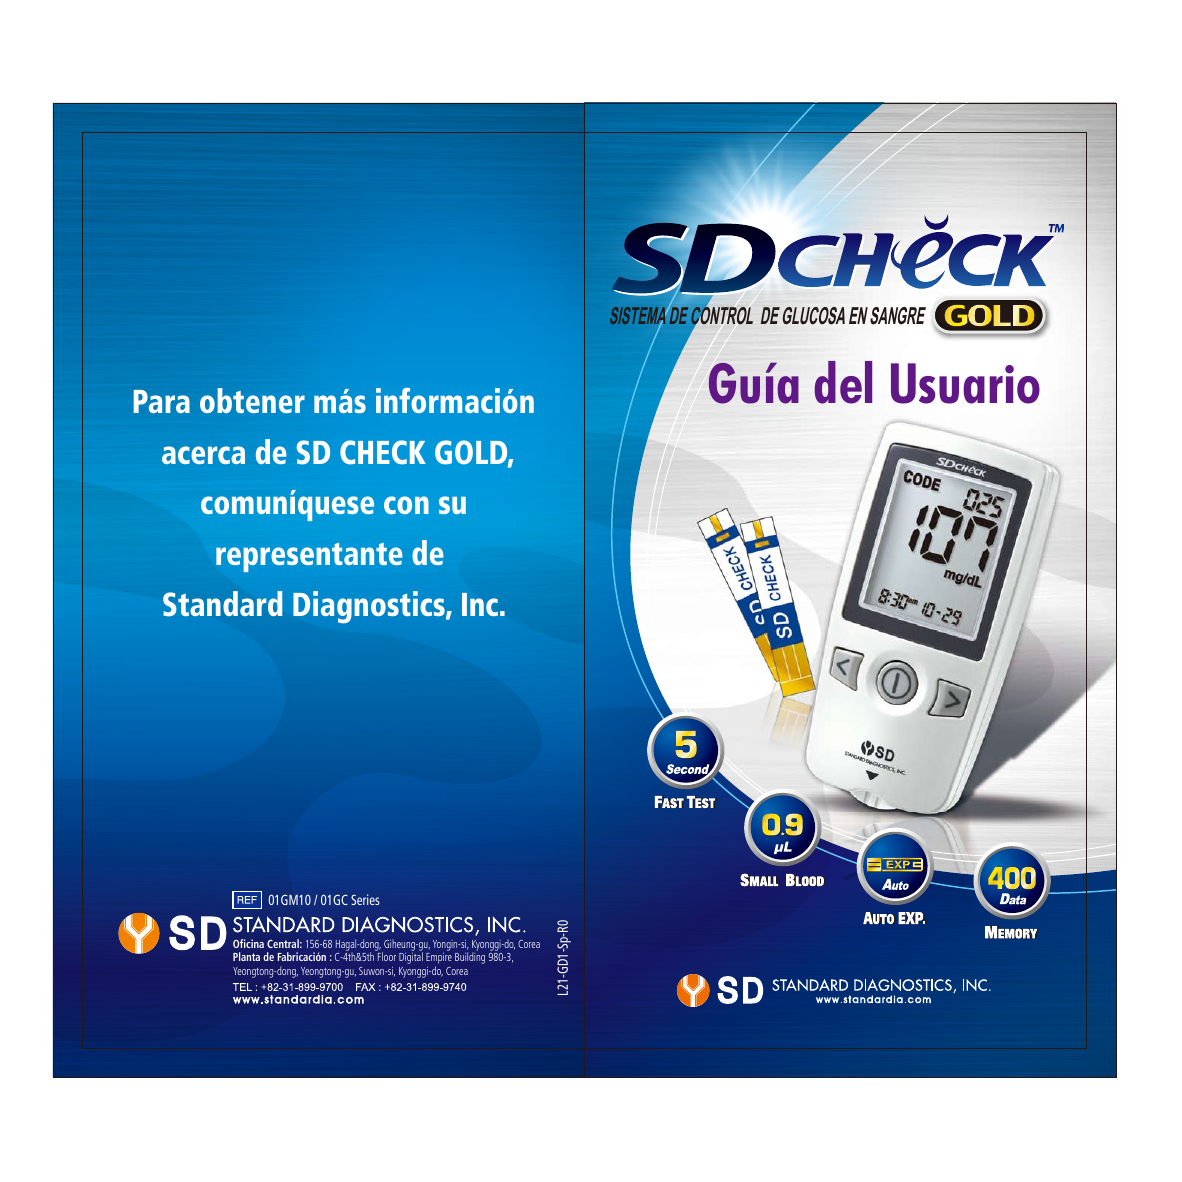 Glucómetro medidor de glucosa SD-check, marca SD - Standar Diagnostics,  SDD-01GC10